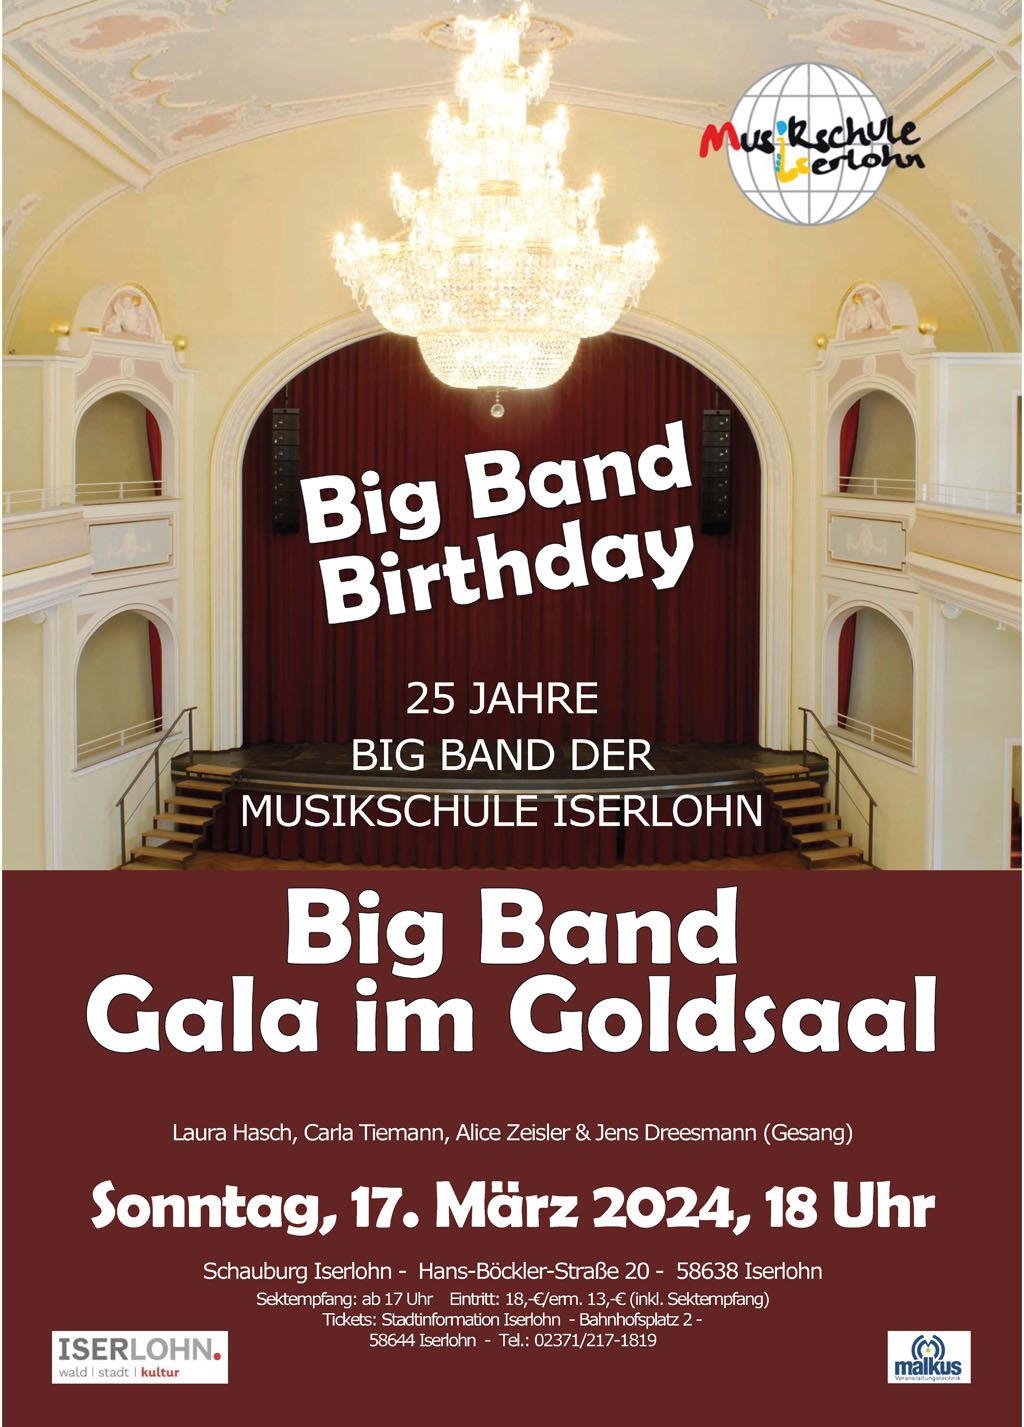 Big Band-Gala im Goldsaal am Sonntag: Es gibt noch Karten an der Abendkasse